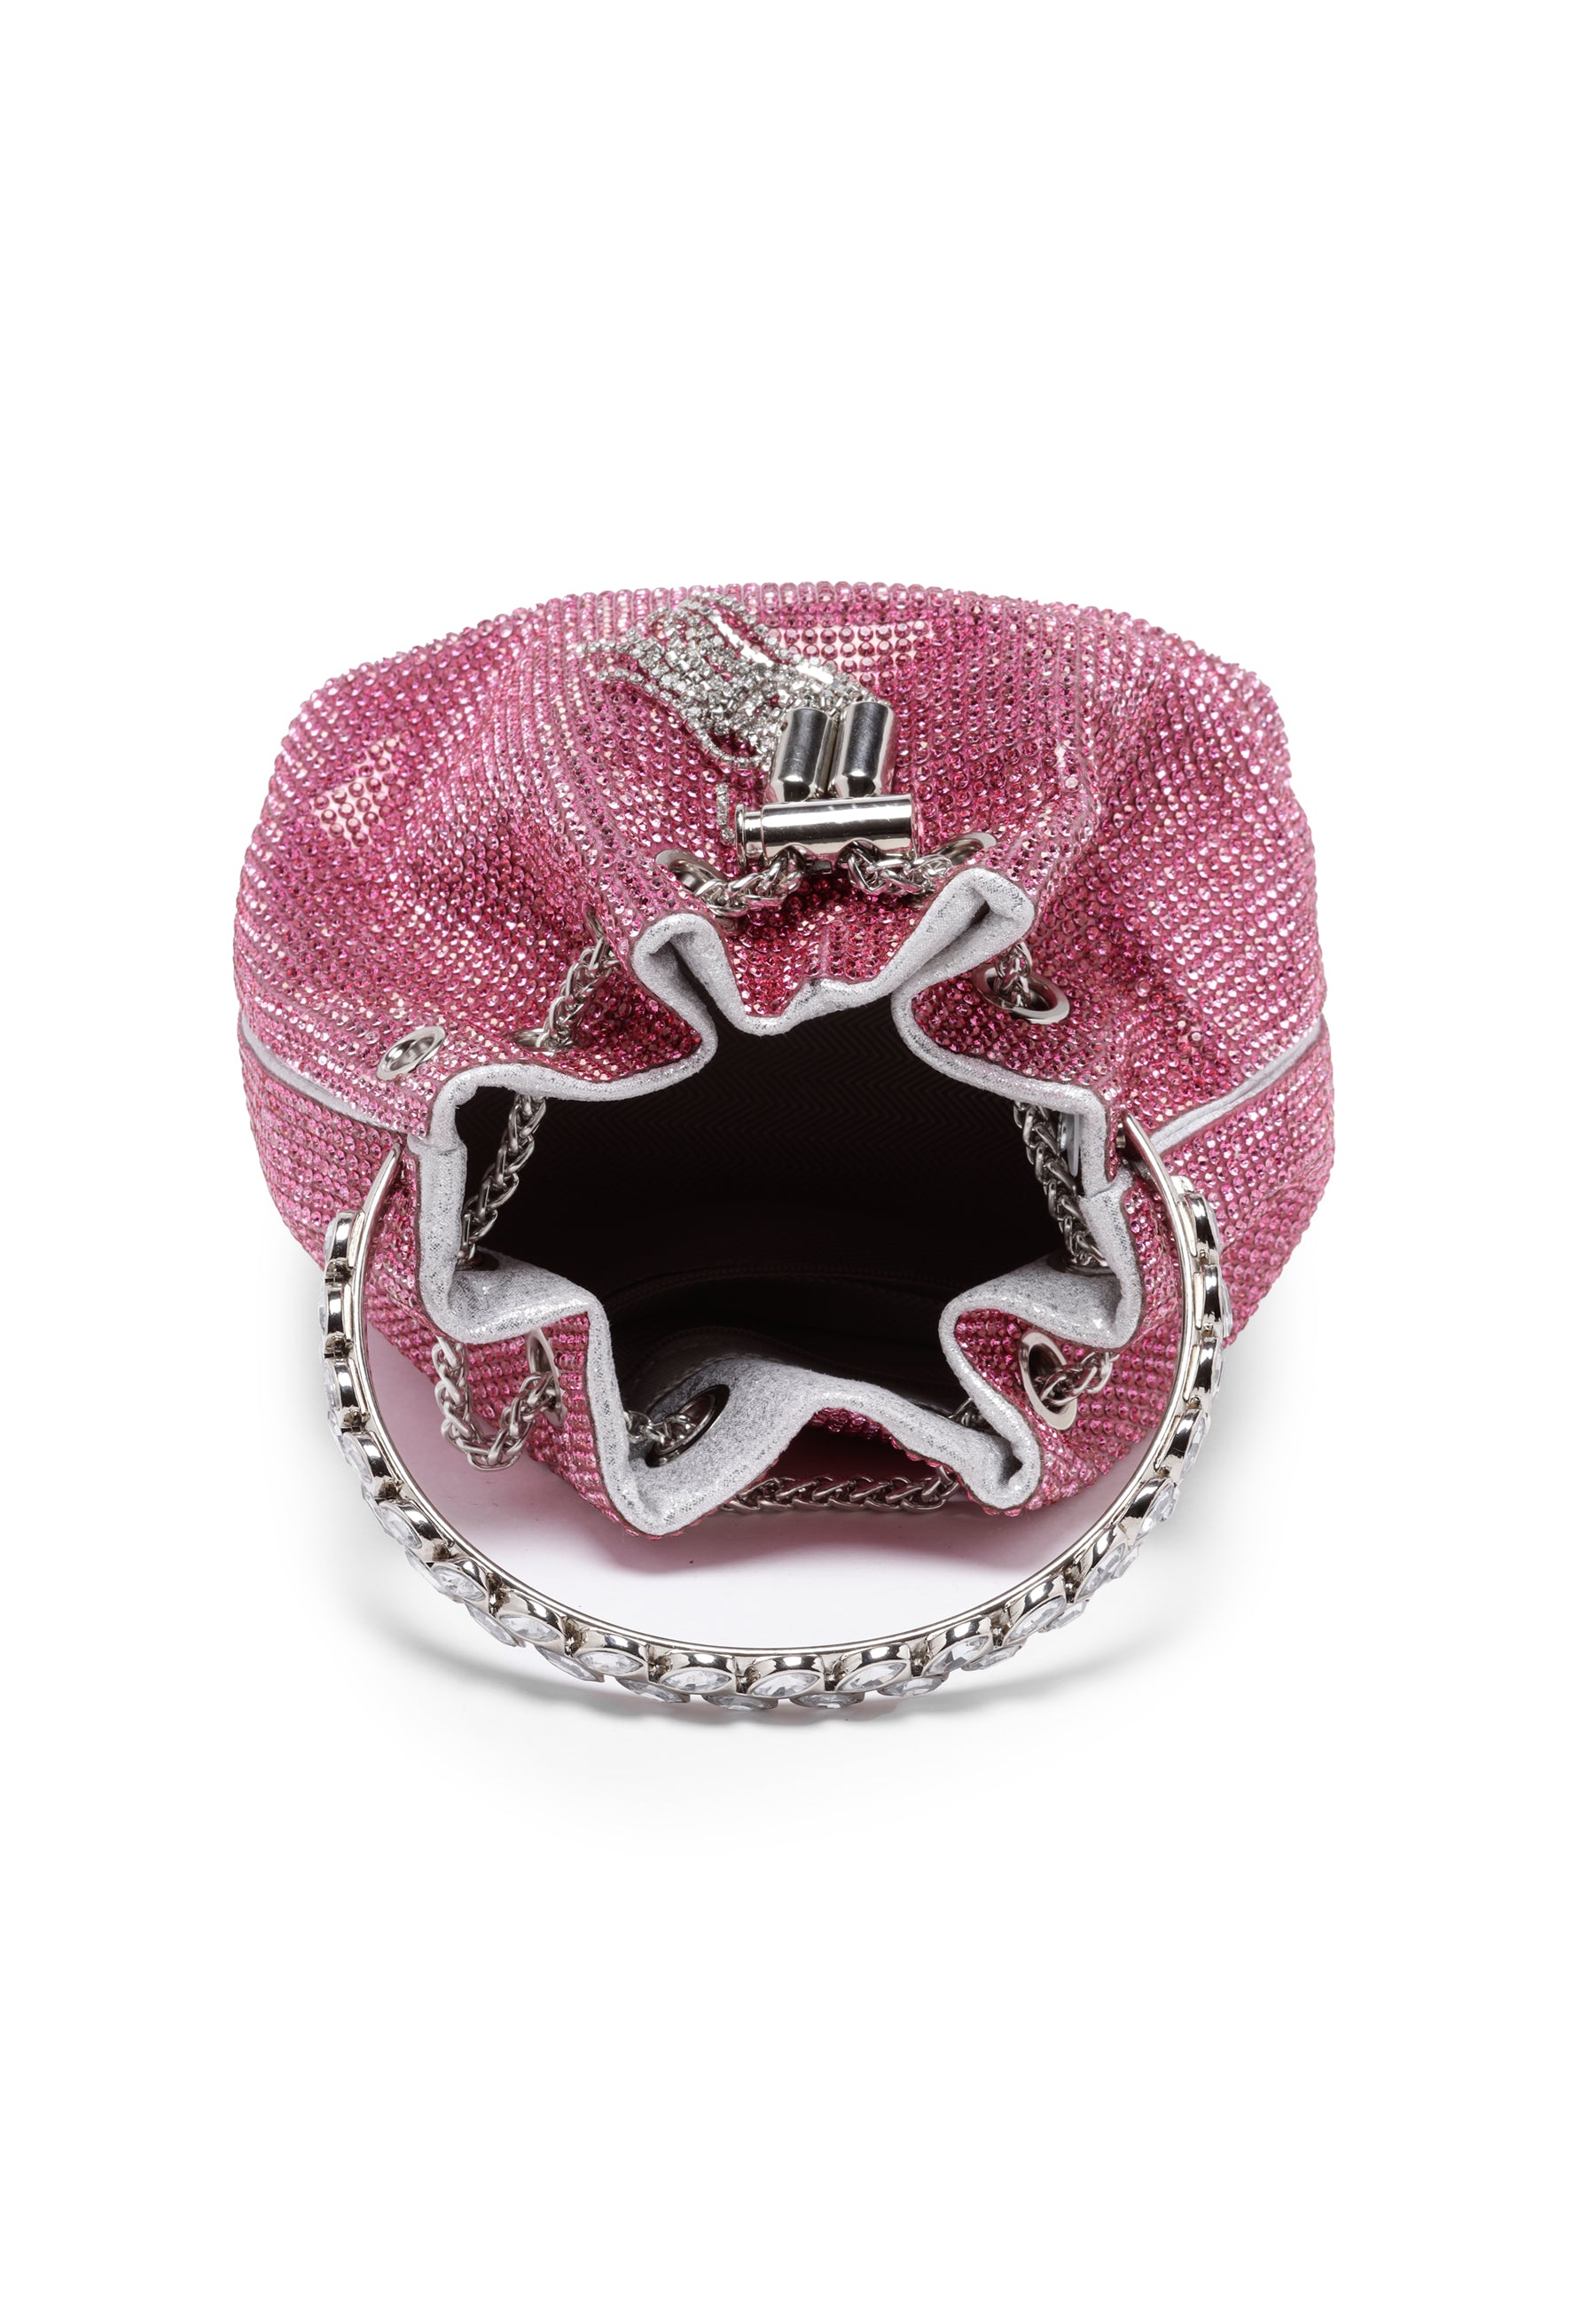 Pink Crystal Studded Skulder Clutch